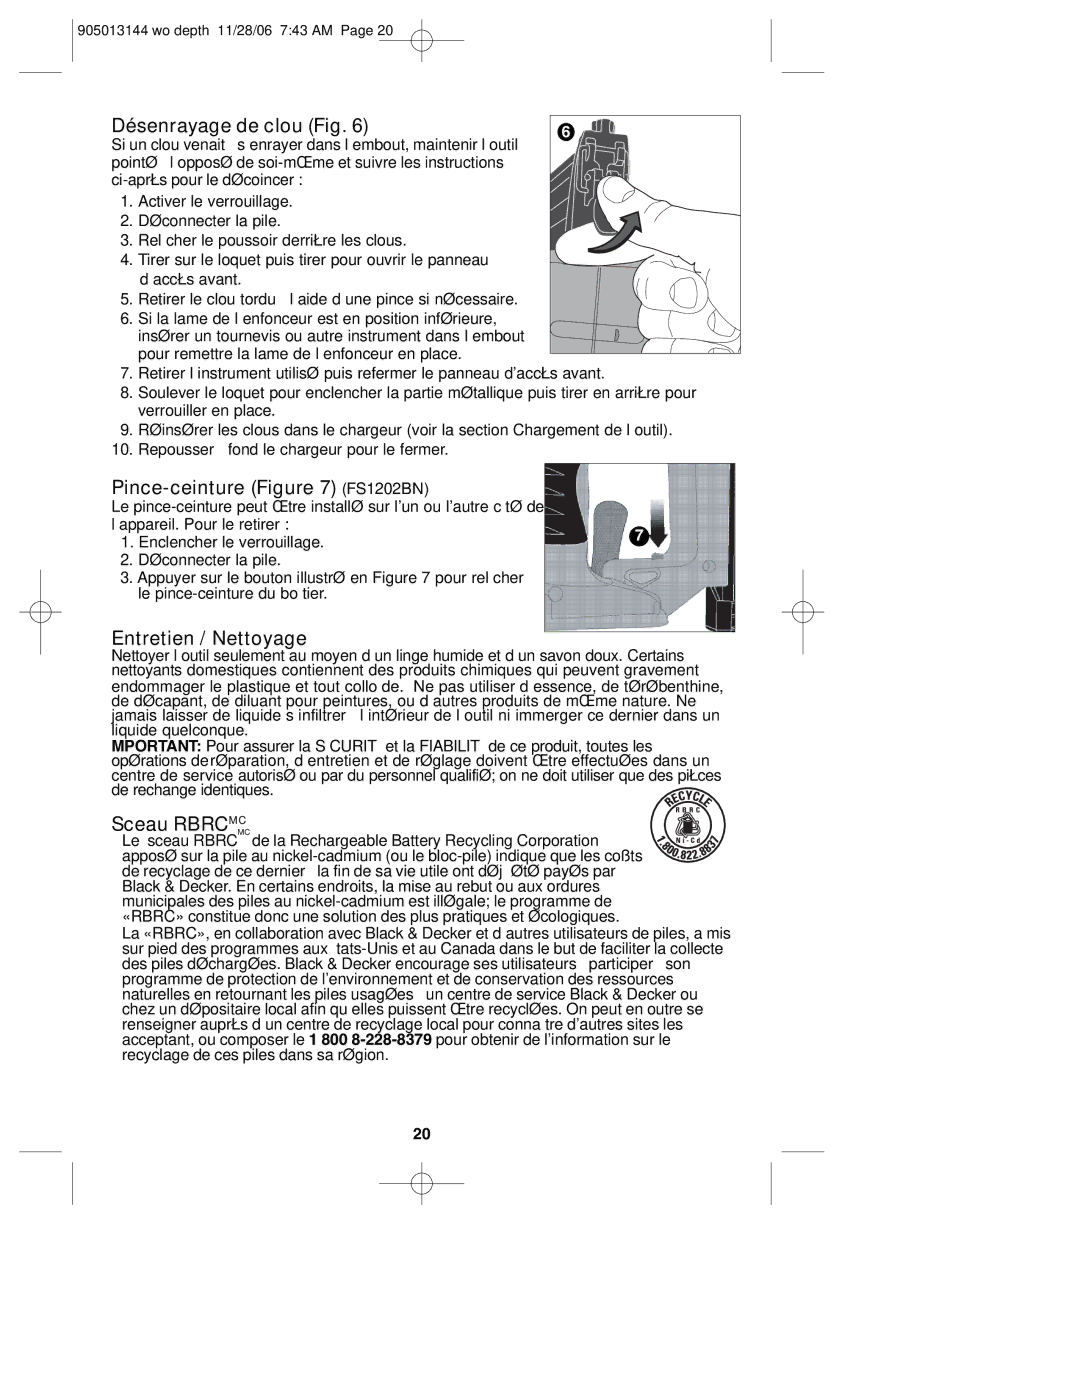 Black & Decker FS1802BN instruction manual Désenrayage de clou Fig, Pince-ceinture FS1202BN, Entretien / Nettoyage 